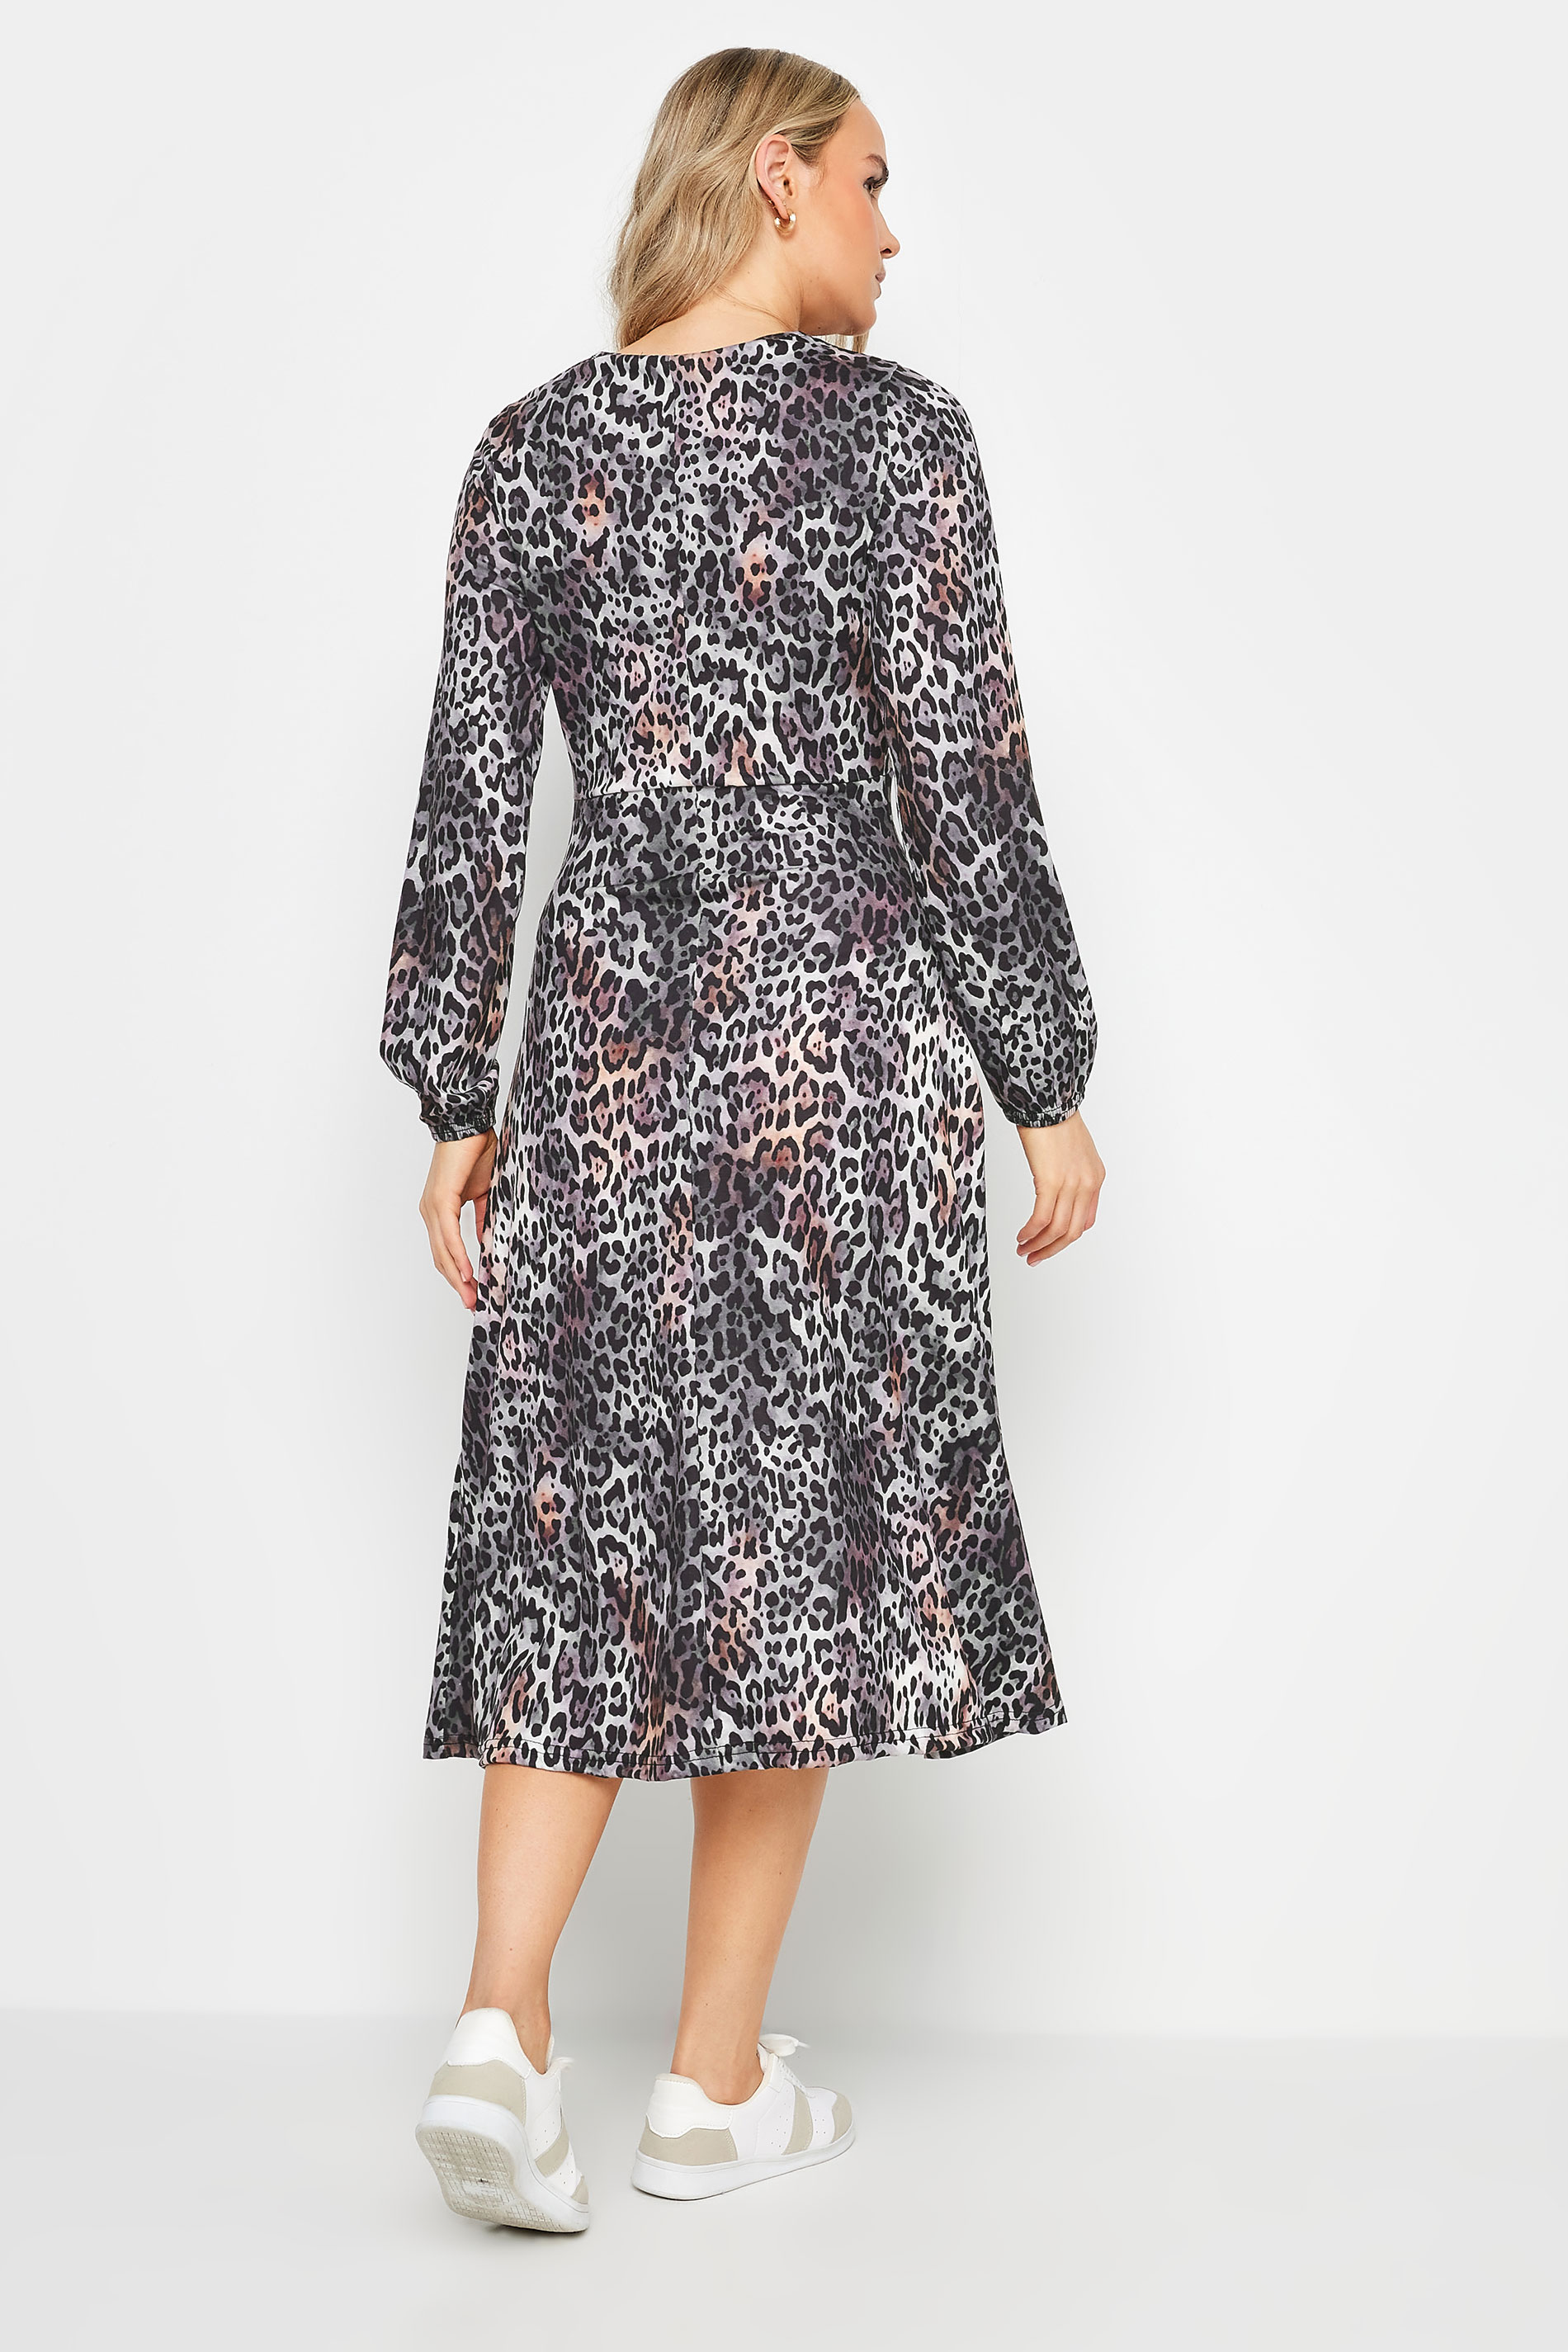 LTS Tall Women's Grey Leopard Print Midi Dress | Long Tall Sally 3